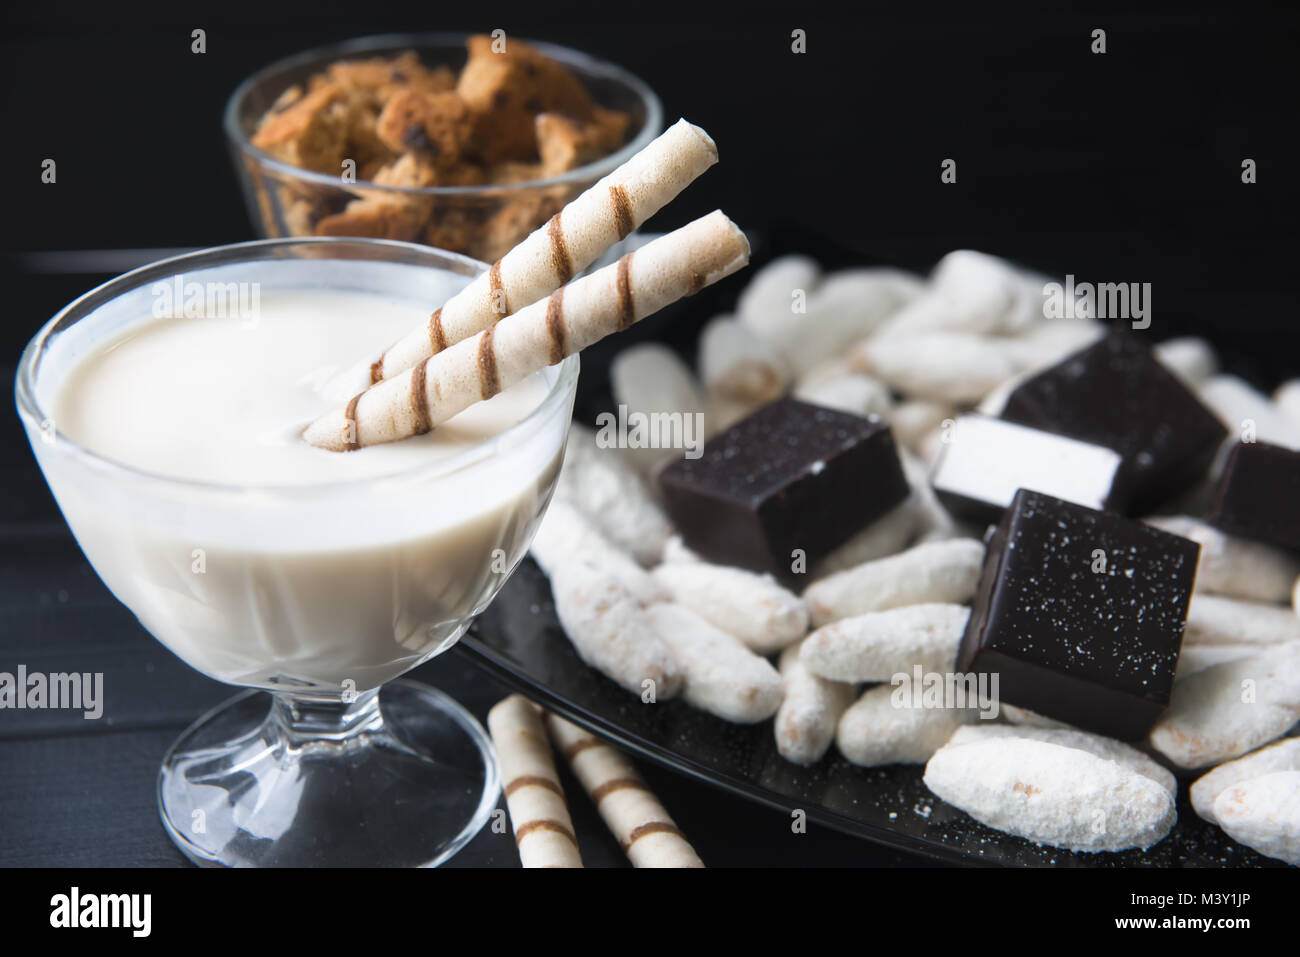 Les sucreries, les pailles dans la crème, des biscuits et des bonbons sur la table Banque D'Images